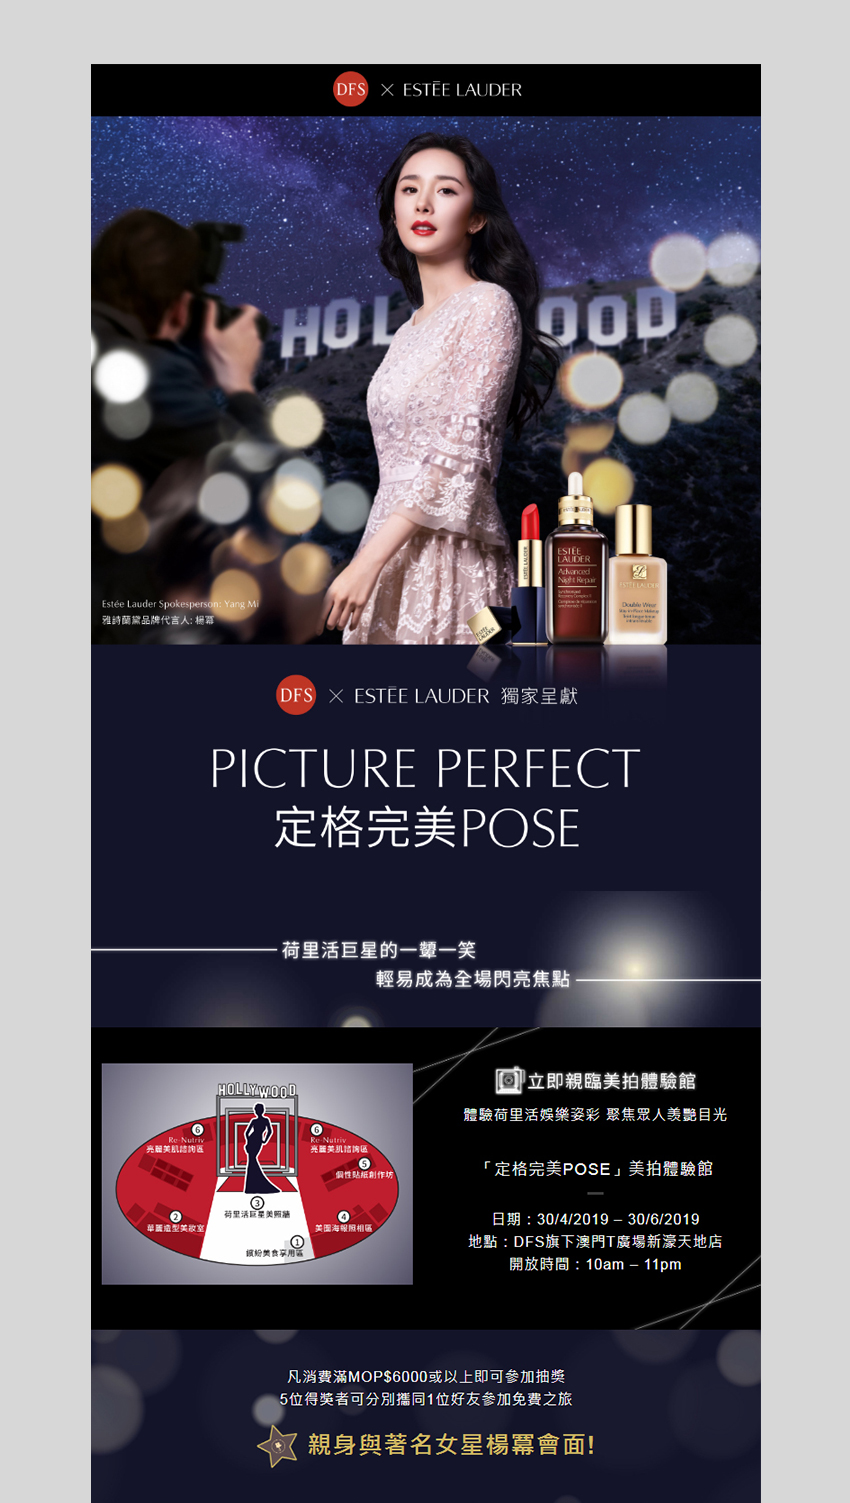 DFS x ESTÉE LAUDER Picture Perfect Campaign Website